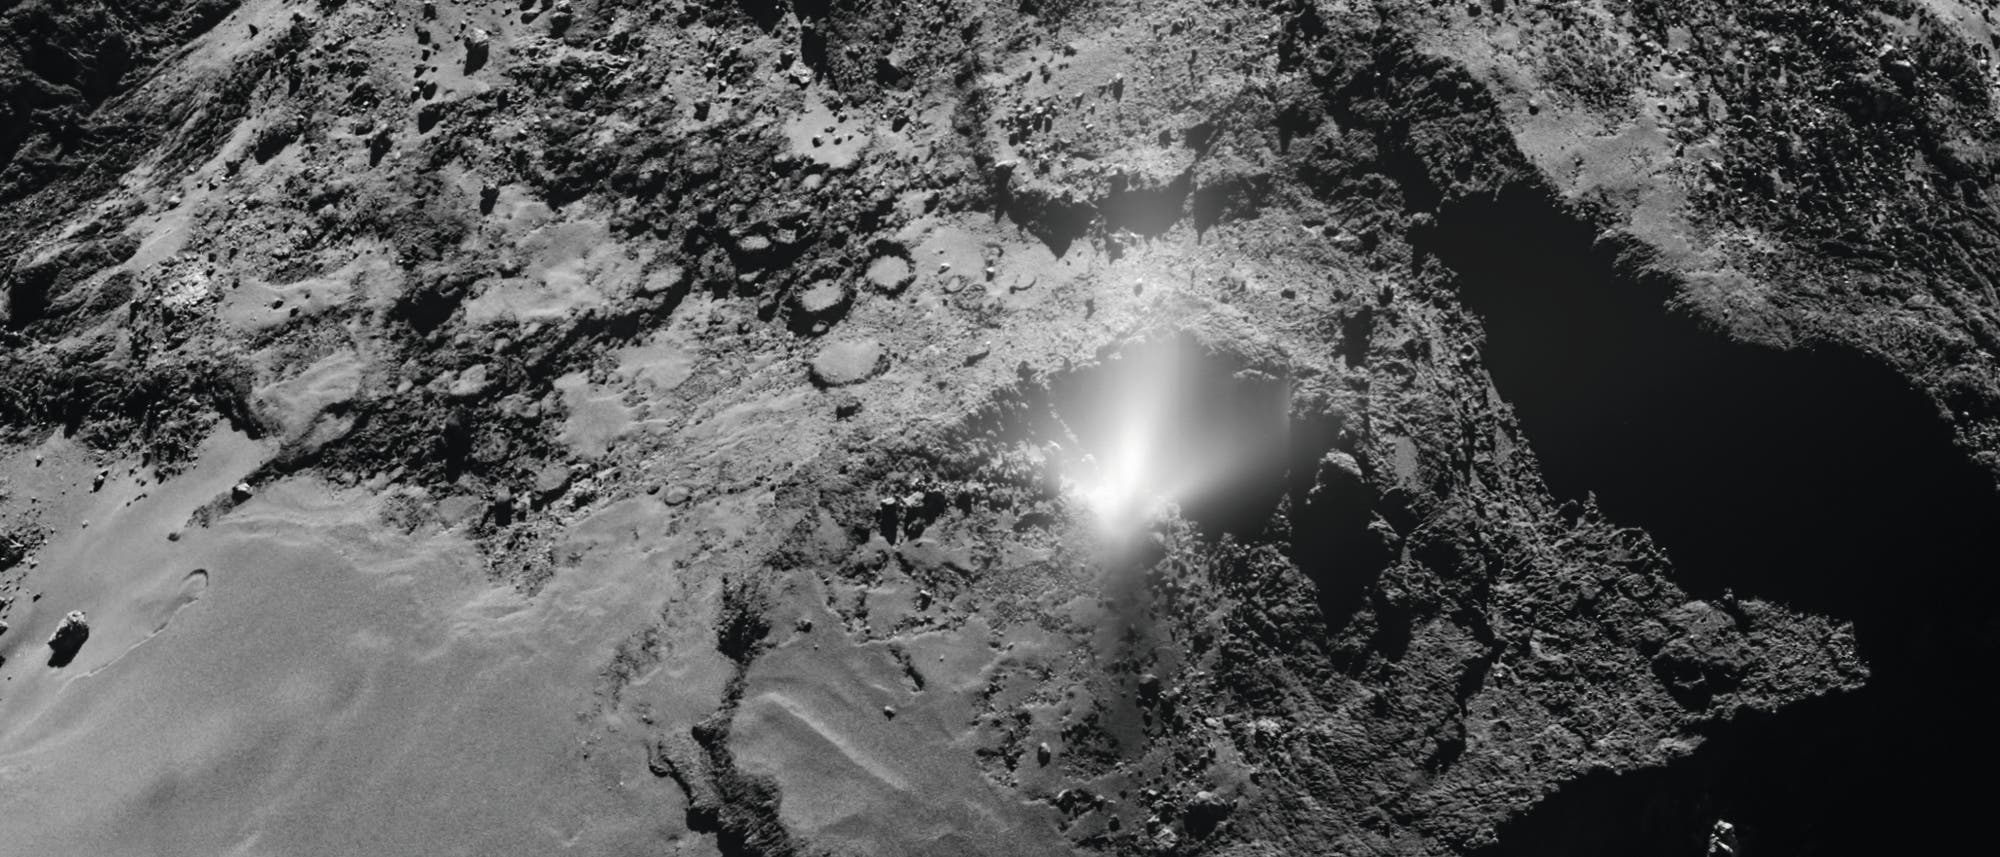 Die europäische Kometensonde Rosetta beobachtete am 3. Juli 2016 eine Staubfontäne über der Oberfläche des Kometen 67P/Tschurjumow-Gerasimenko.